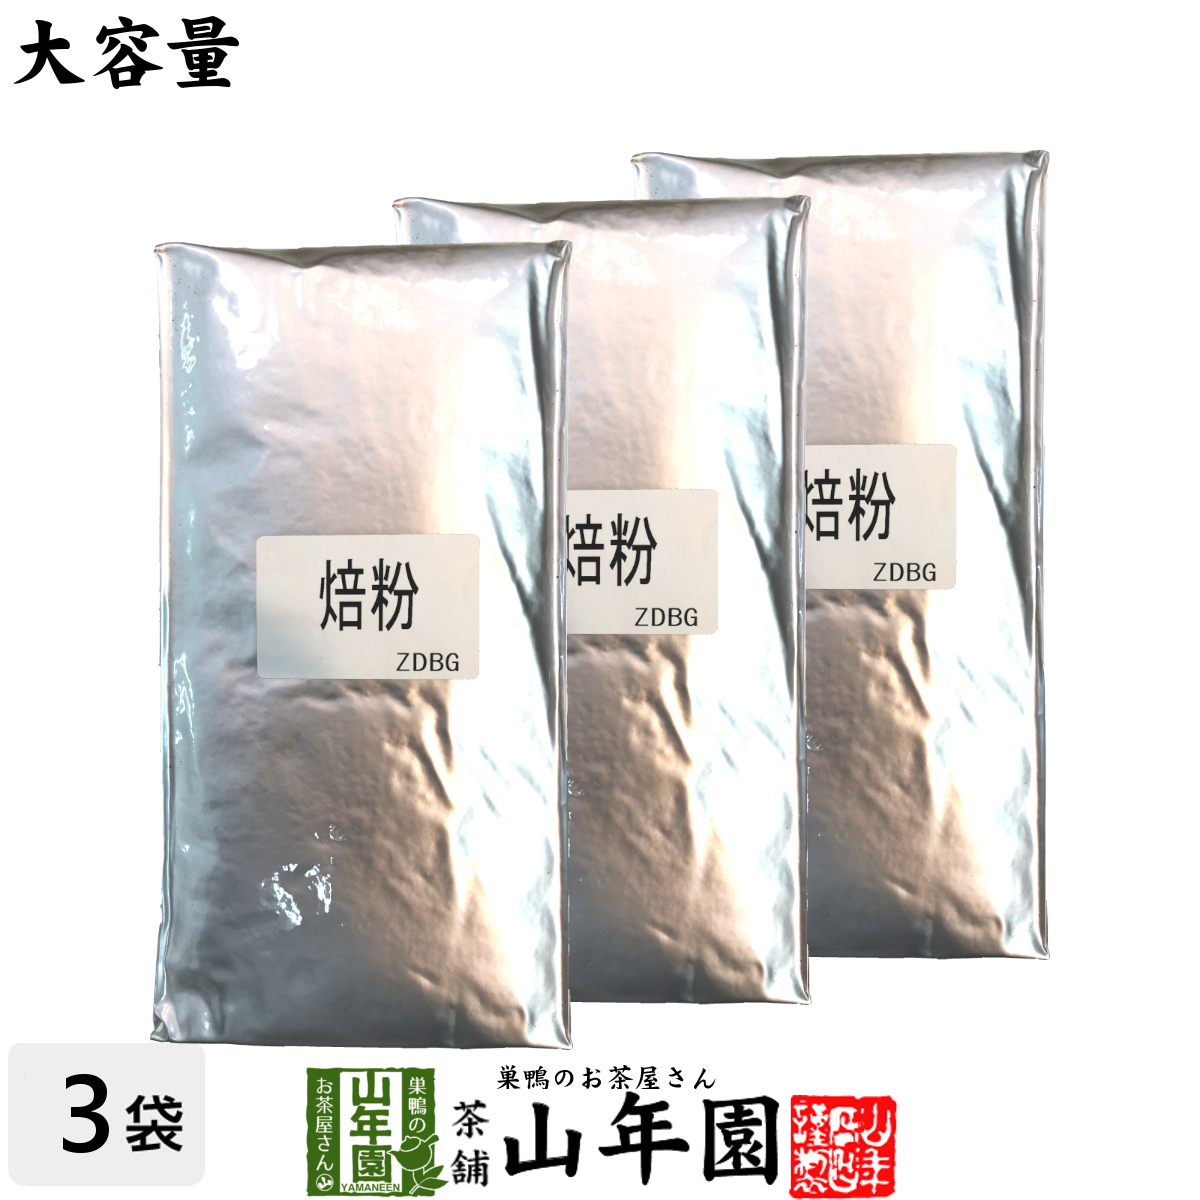  японский чай чай местного производства 100% для бизнеса . чай порошок 1kg×3 пакет комплект Shizuoka префектура производство 